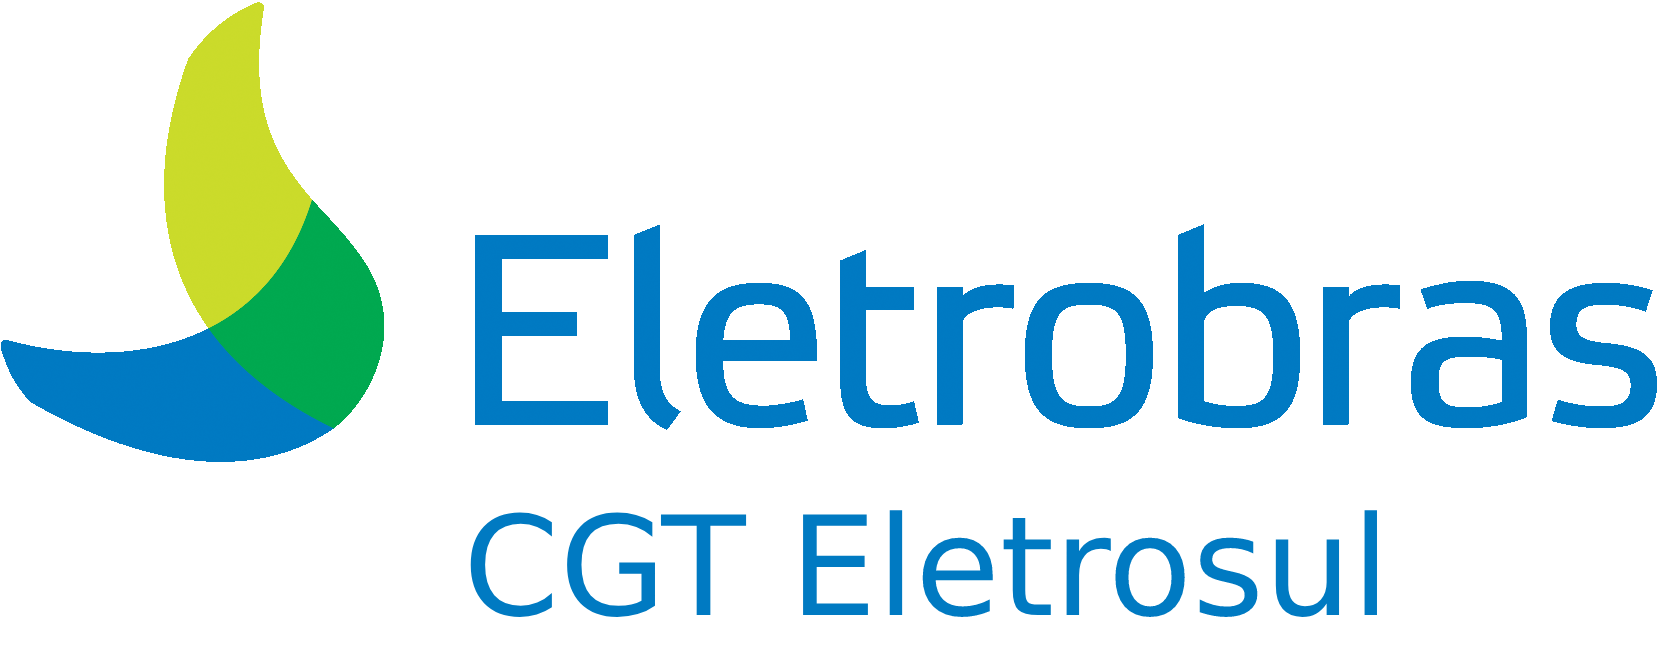 Logo do plano ELETROSUL/ELETROBRAS